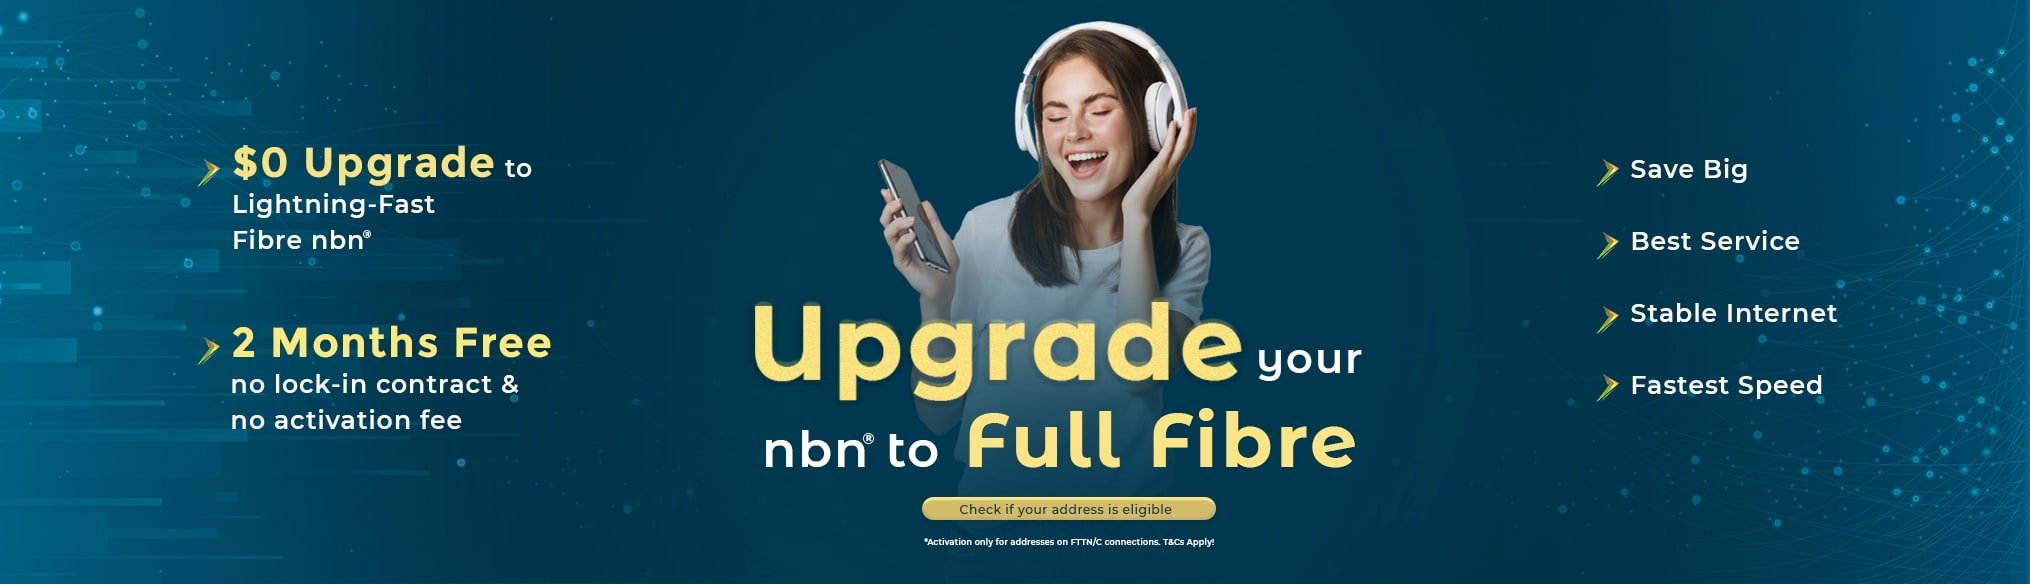 nbn_fttp_upgrade